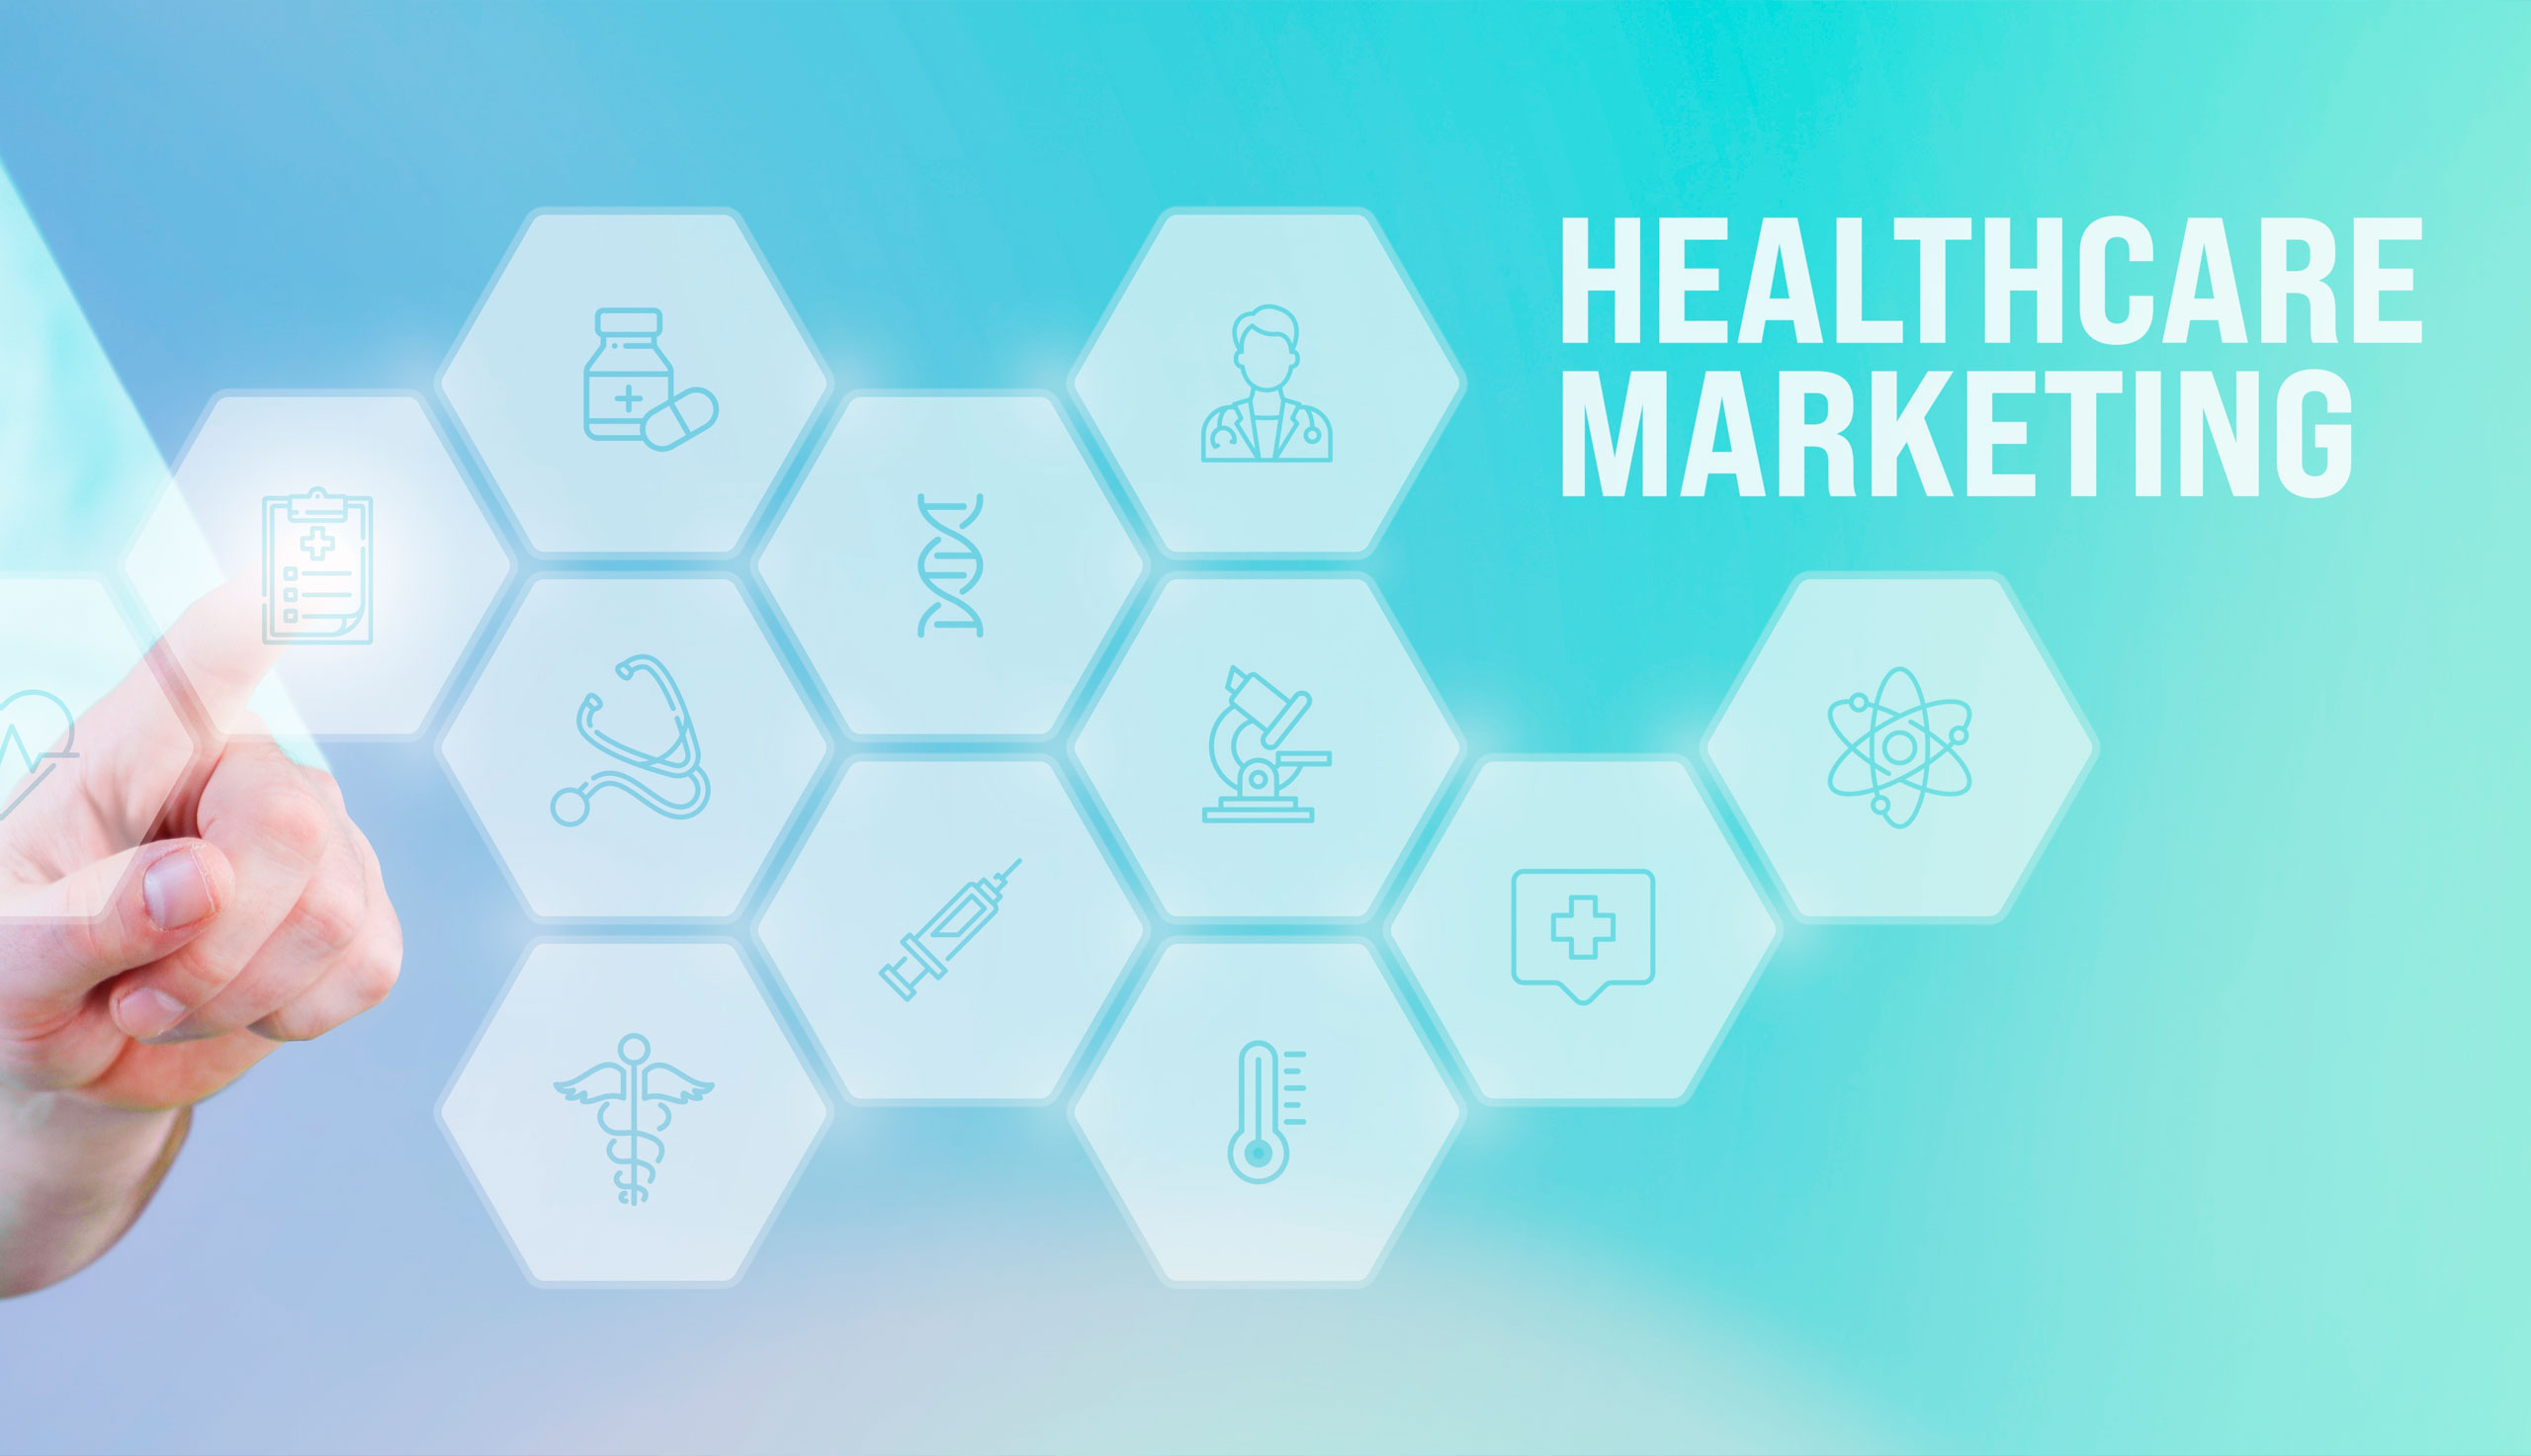 Soluciones de marketing para el sector healthcare - 4Doctors